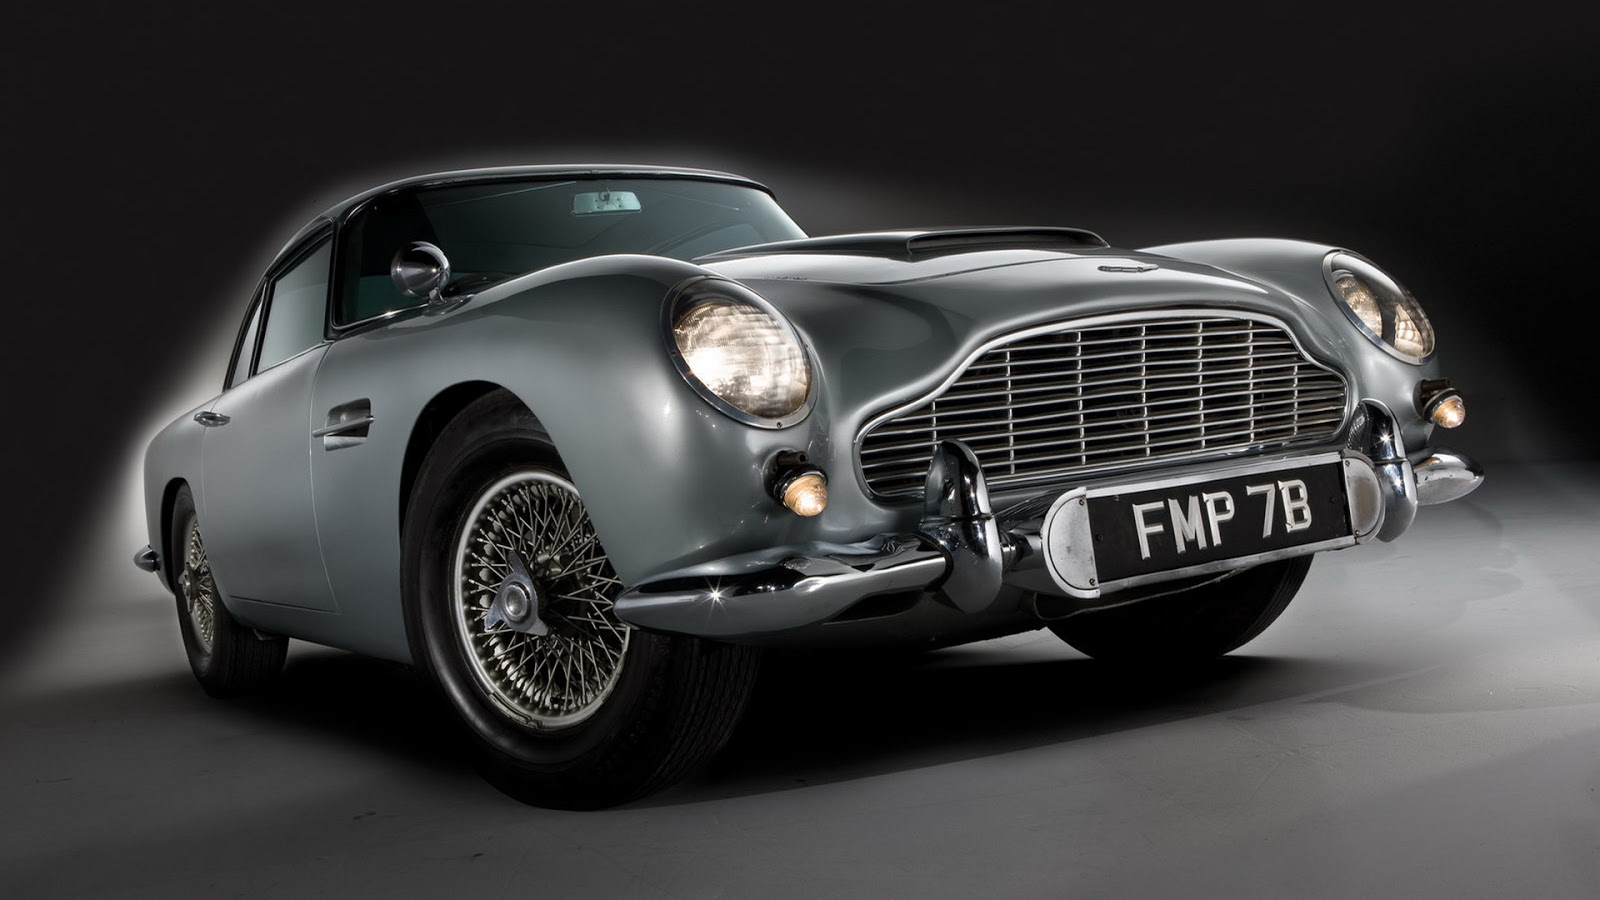 Tràn đầy sức hút và đẳng cấp, mẫu hình nền HD Aston Martin DB5 James Bond sẽ khiến bạn cảm thấy sống động và tràn đầy năng lượng. Hãy tải xuống ngay và khám phá sự lôi cuốn của chiếc xe huyền thoại này.